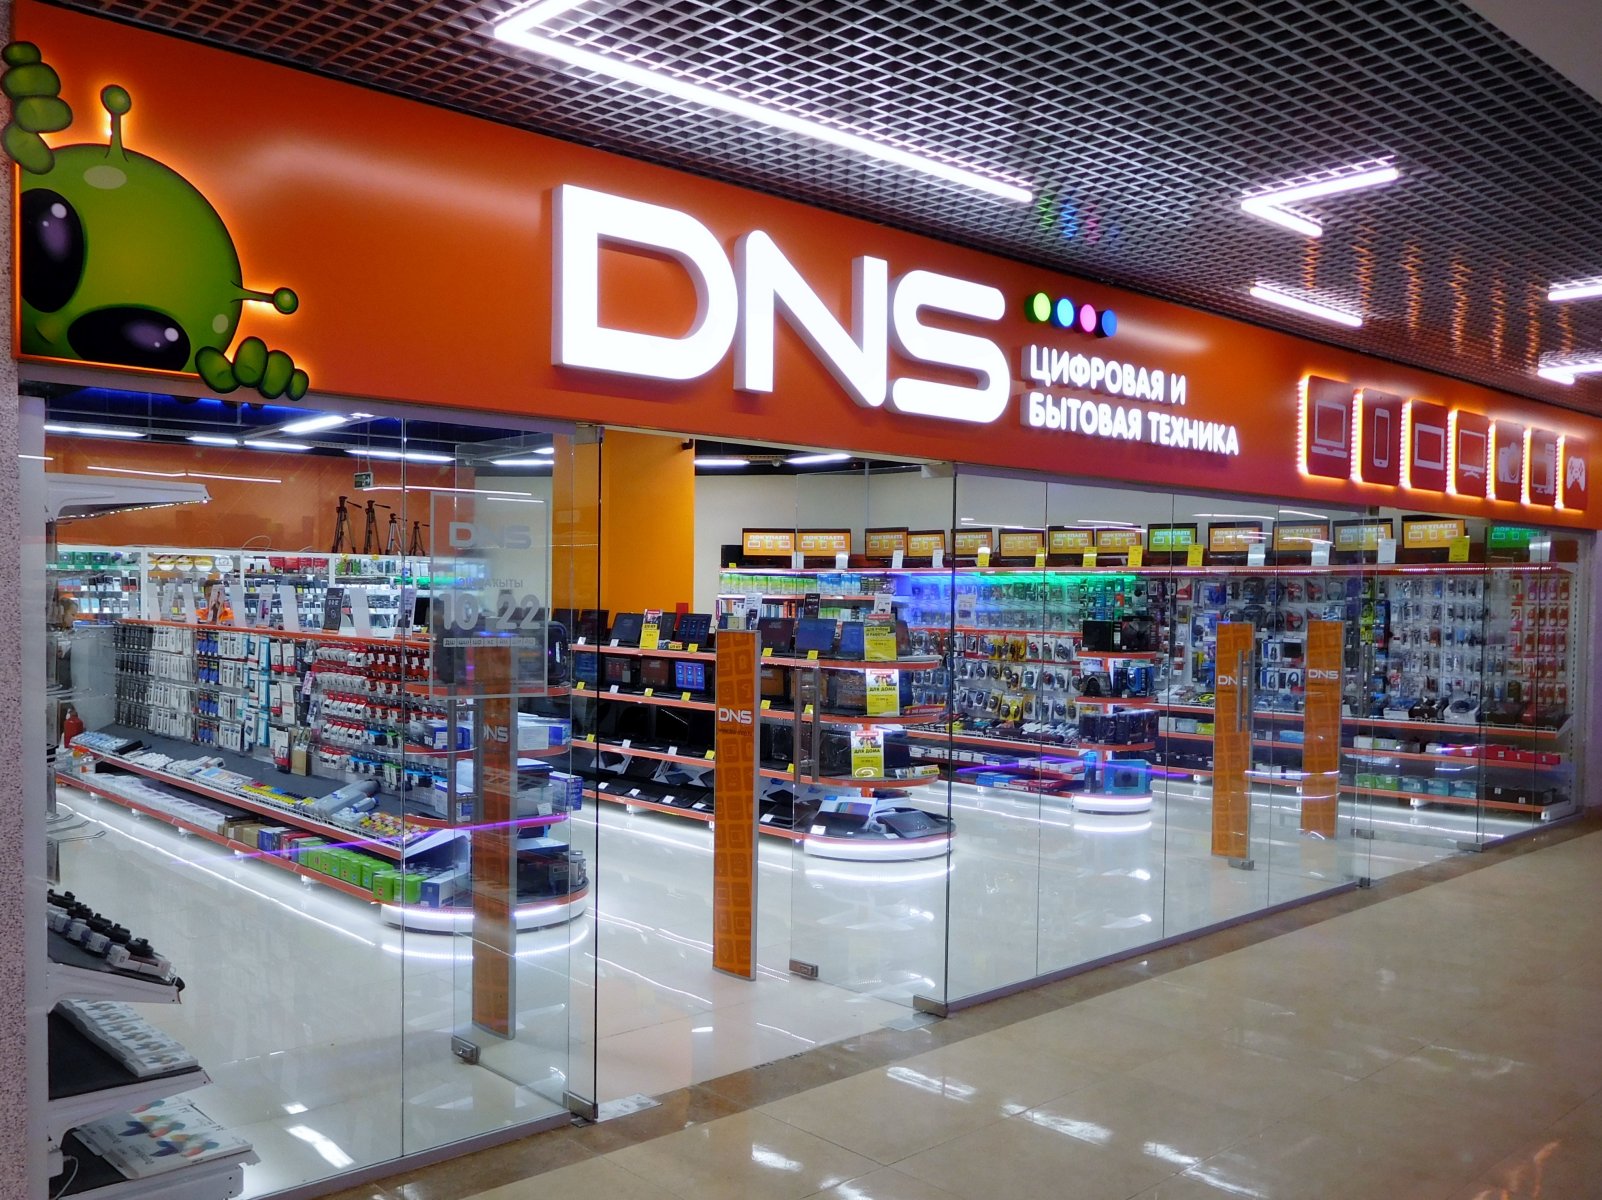 Итоги 1-го дня конфликта: сеть DNS взвинчивает цены и выступает с мрачными прогнозами